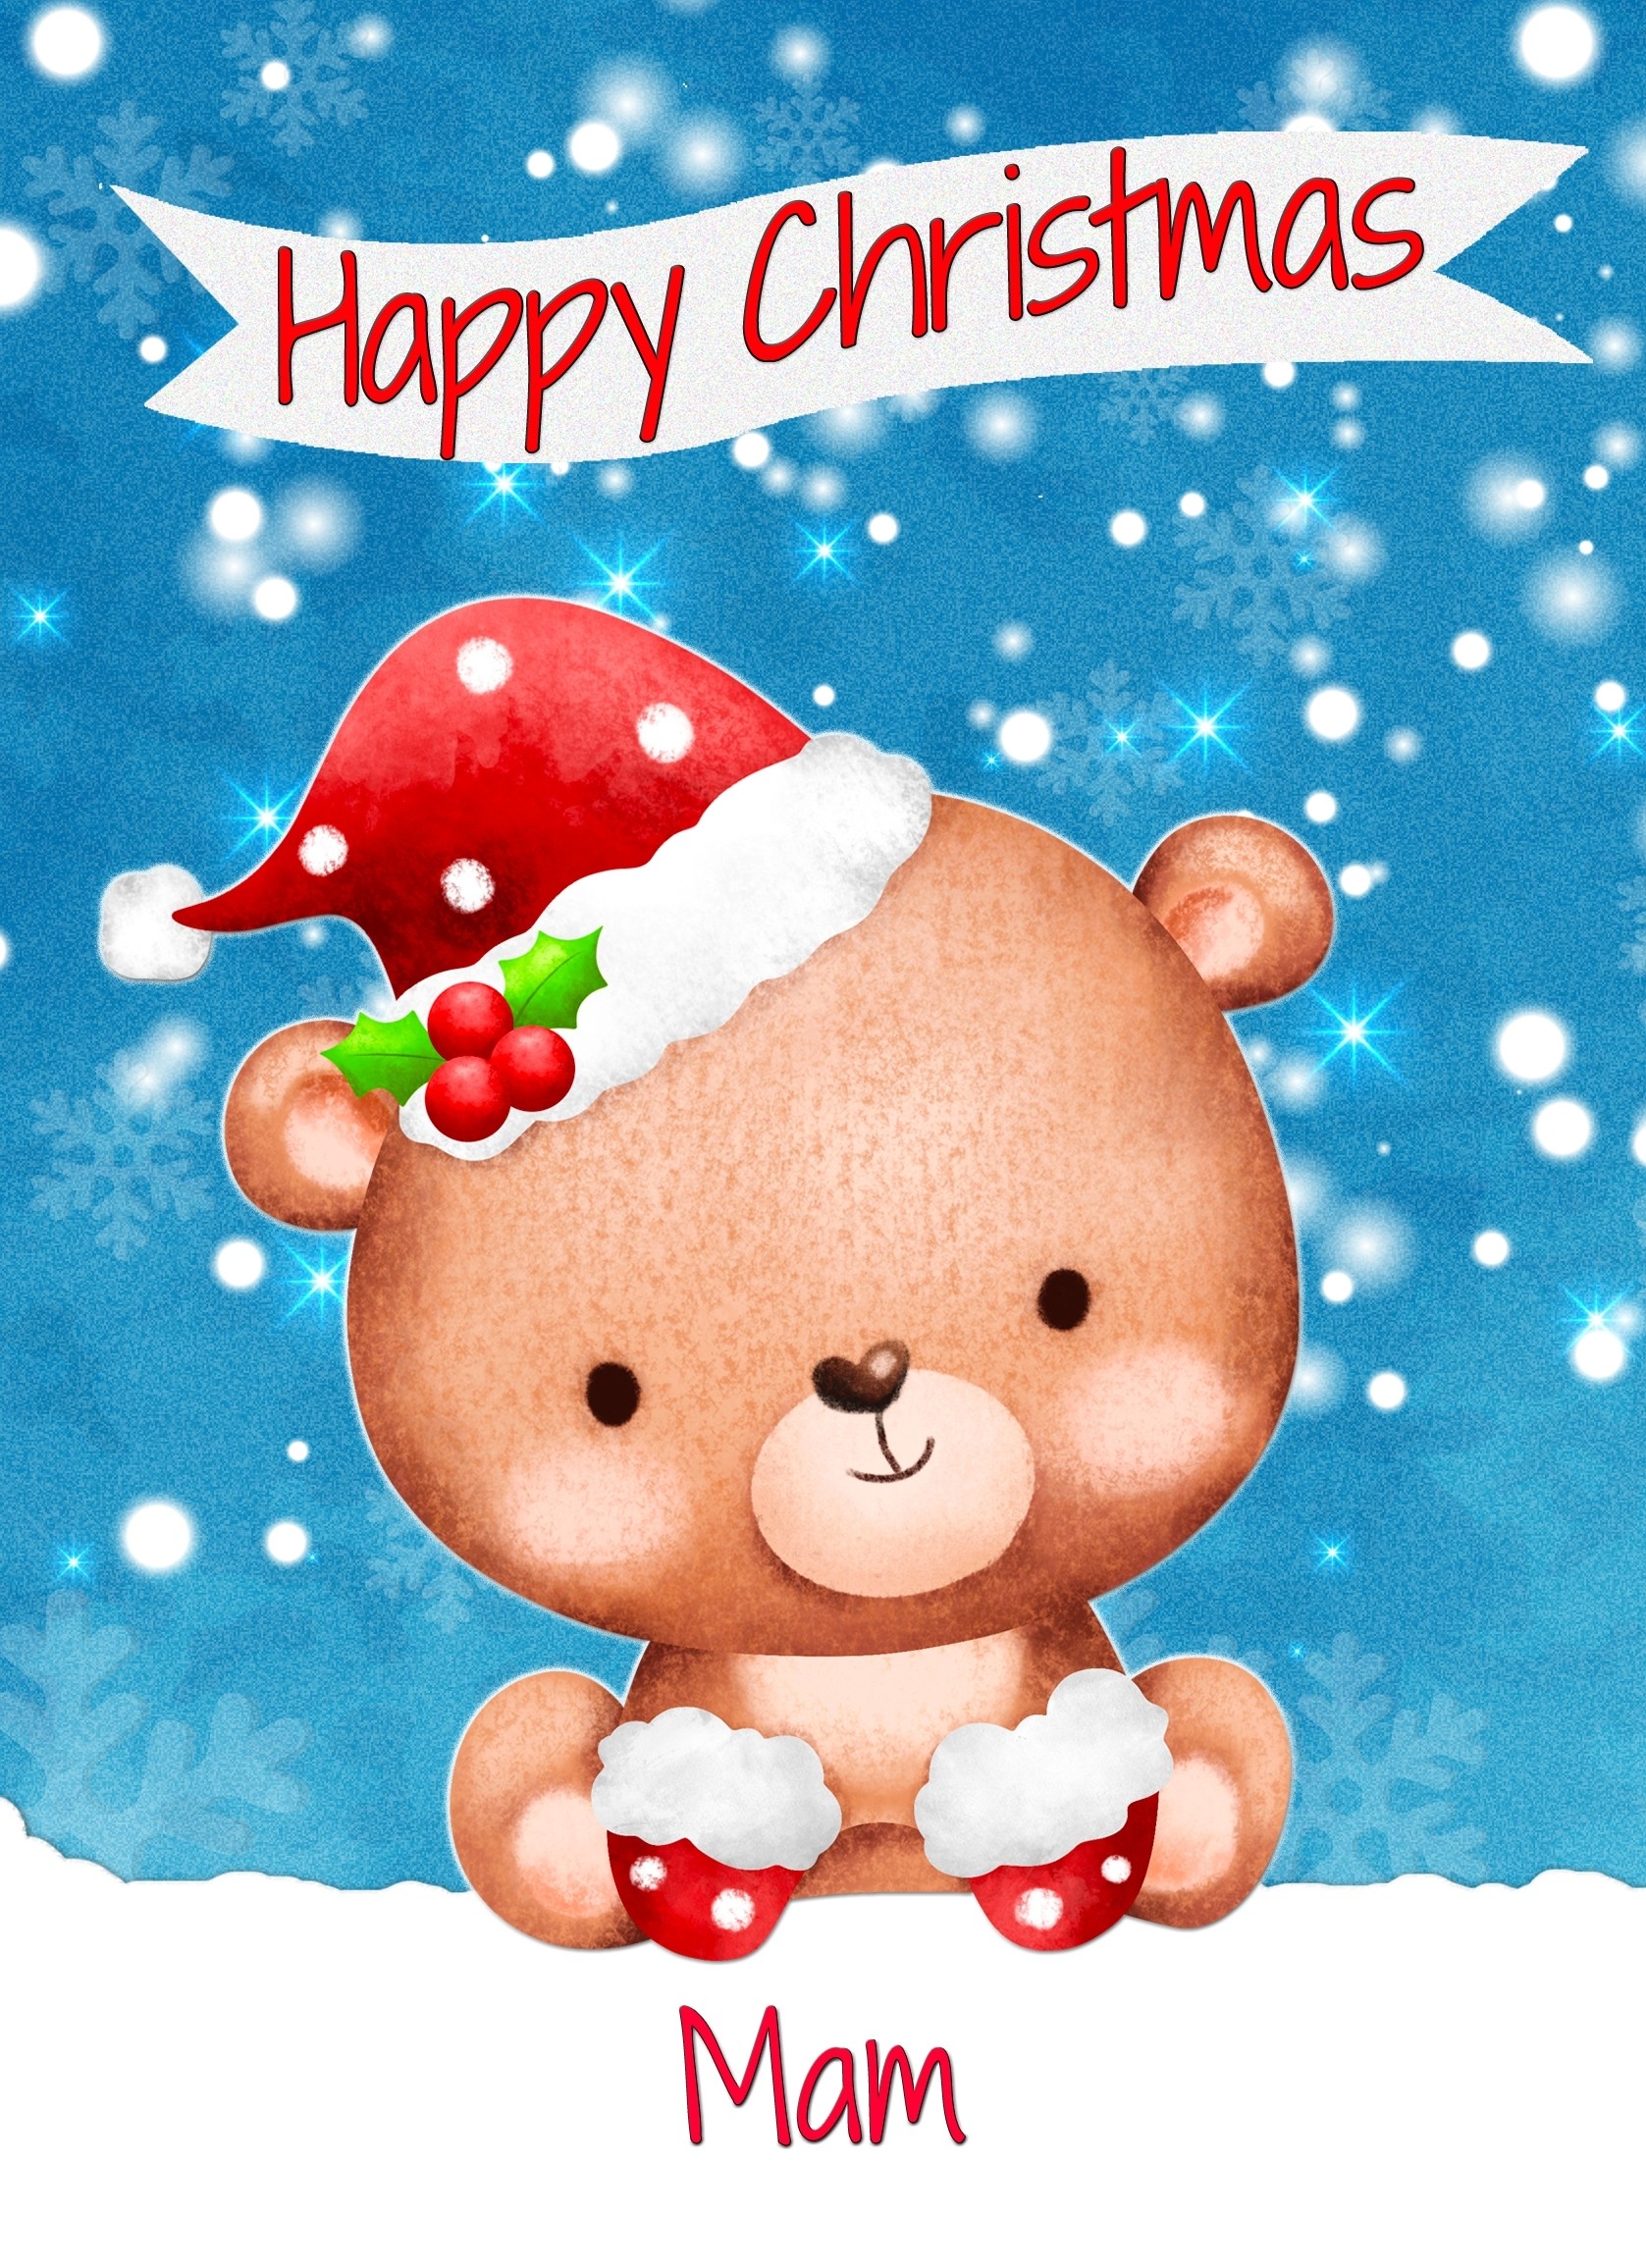 Christmas Card For Mam (Happy Christmas, Bear)